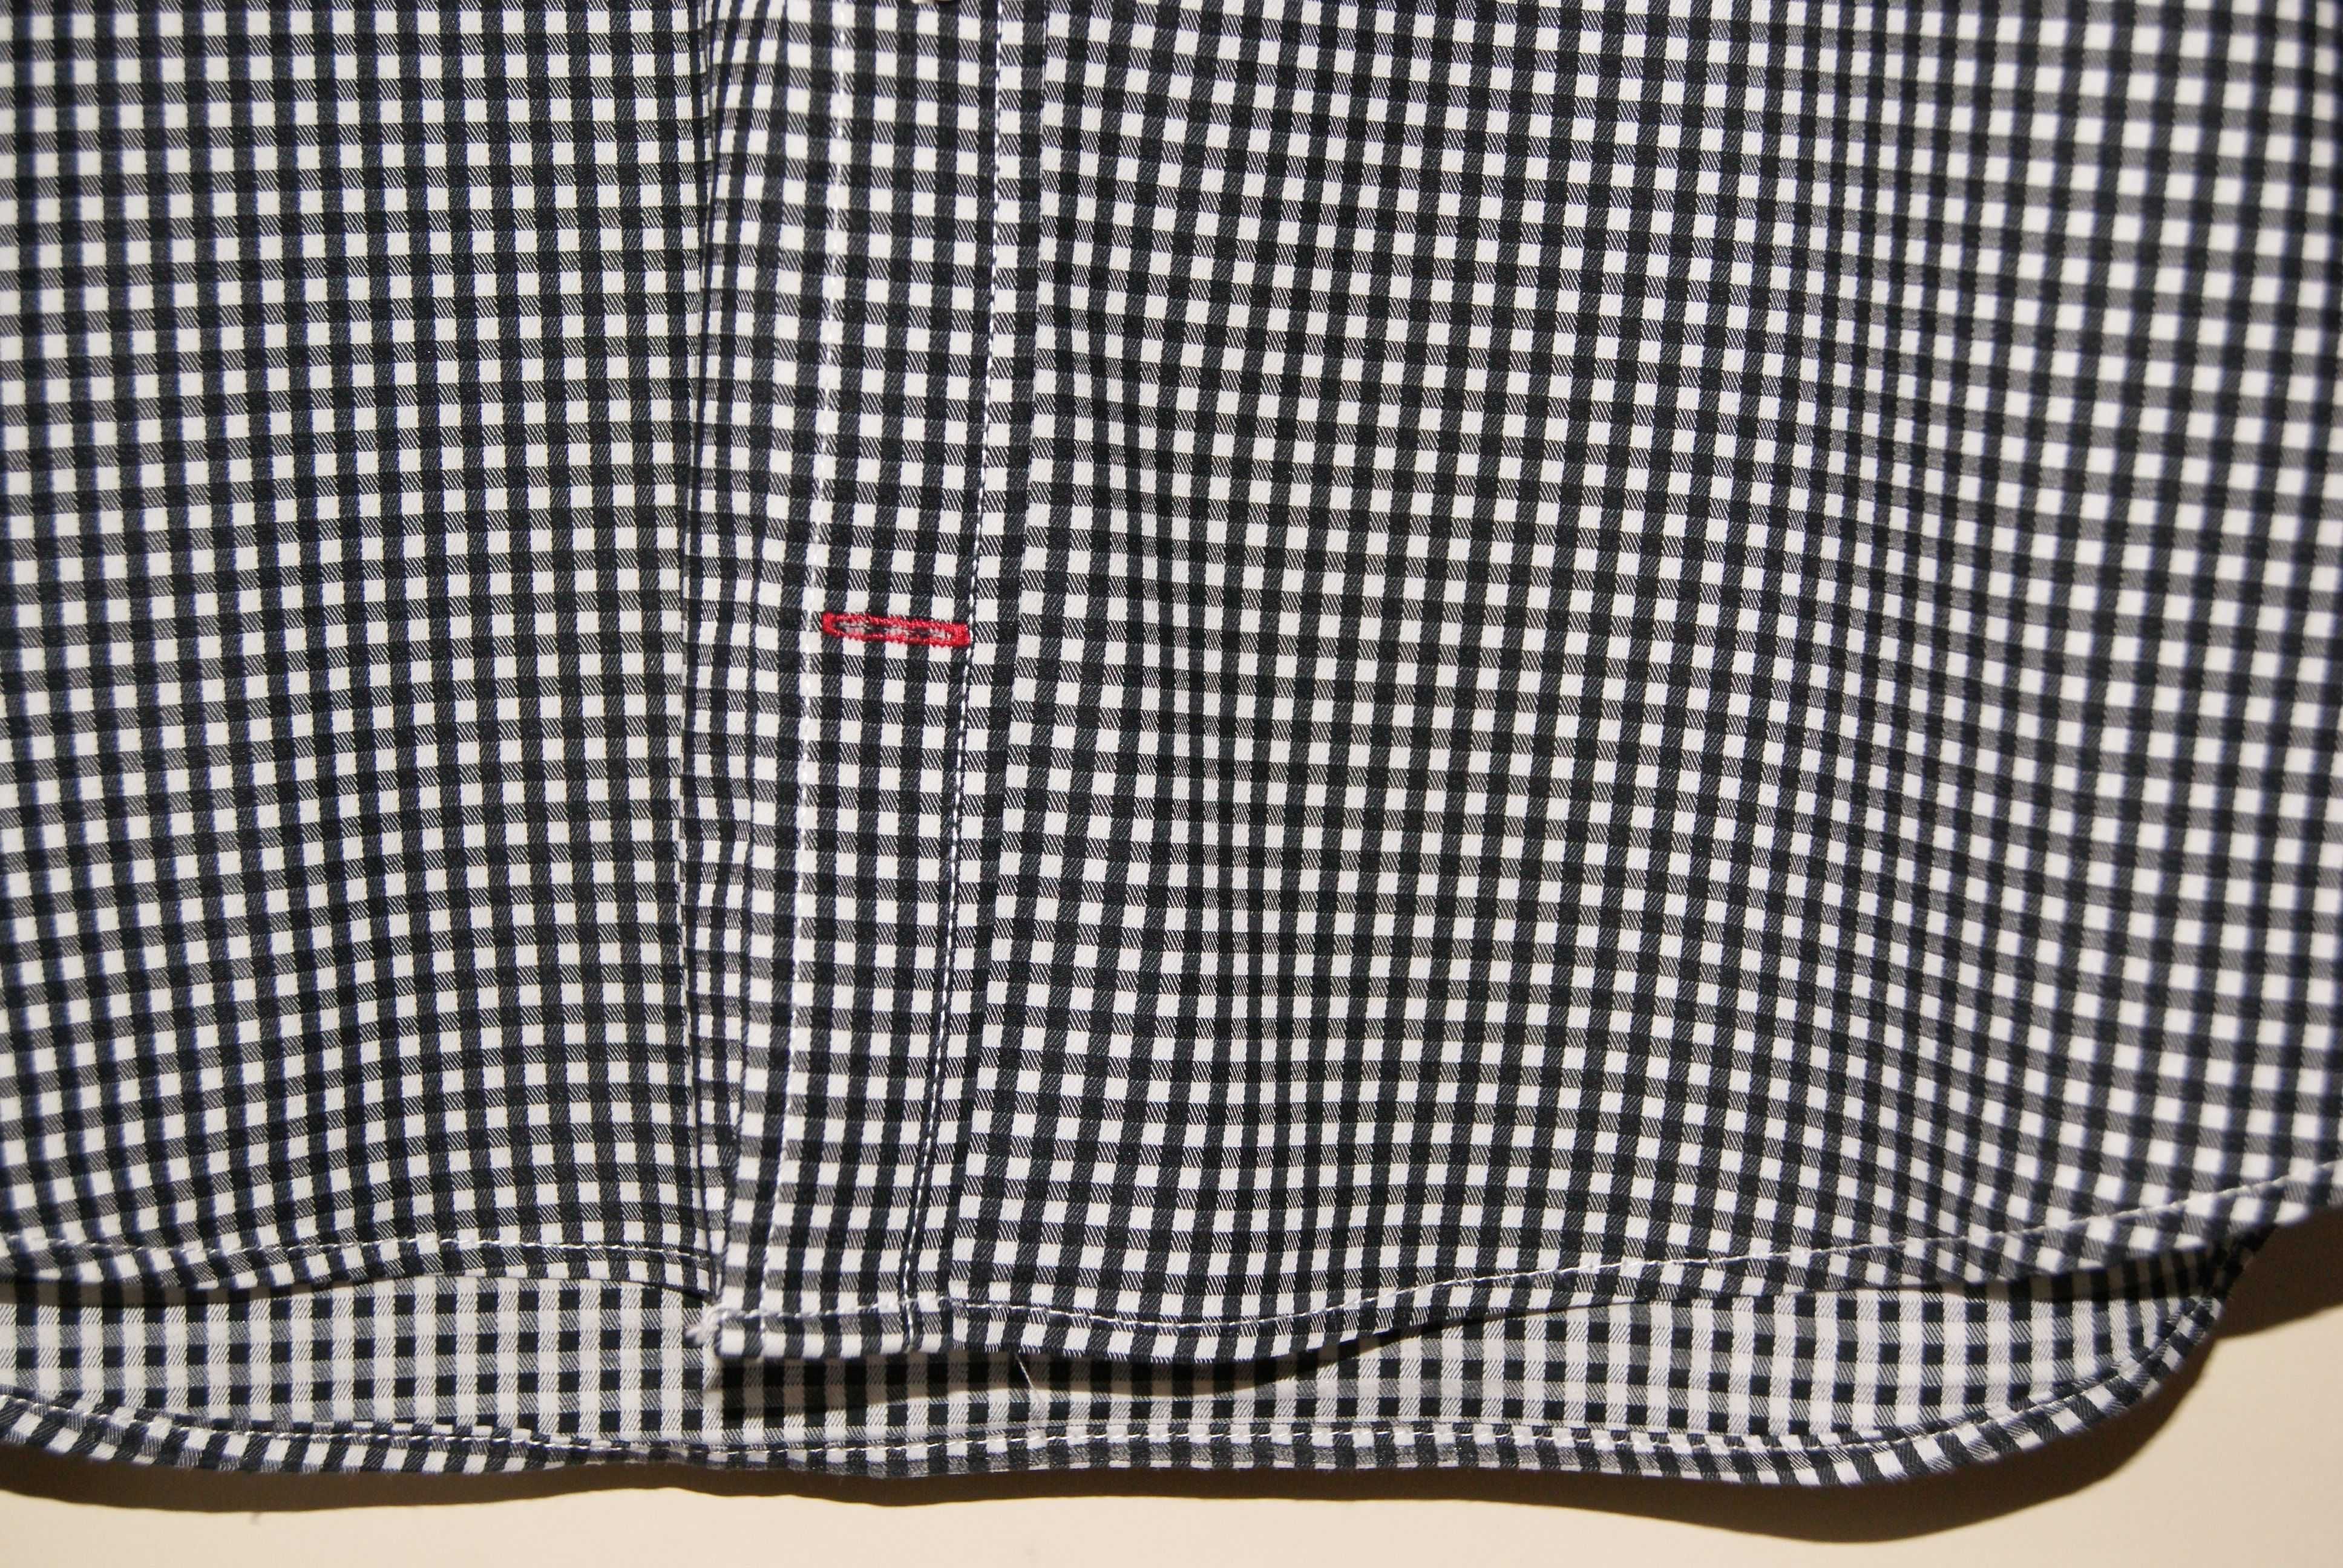 Koszula męska/juniorska DRESSMANN, S, SLIM FIT, biało-czarna kratka